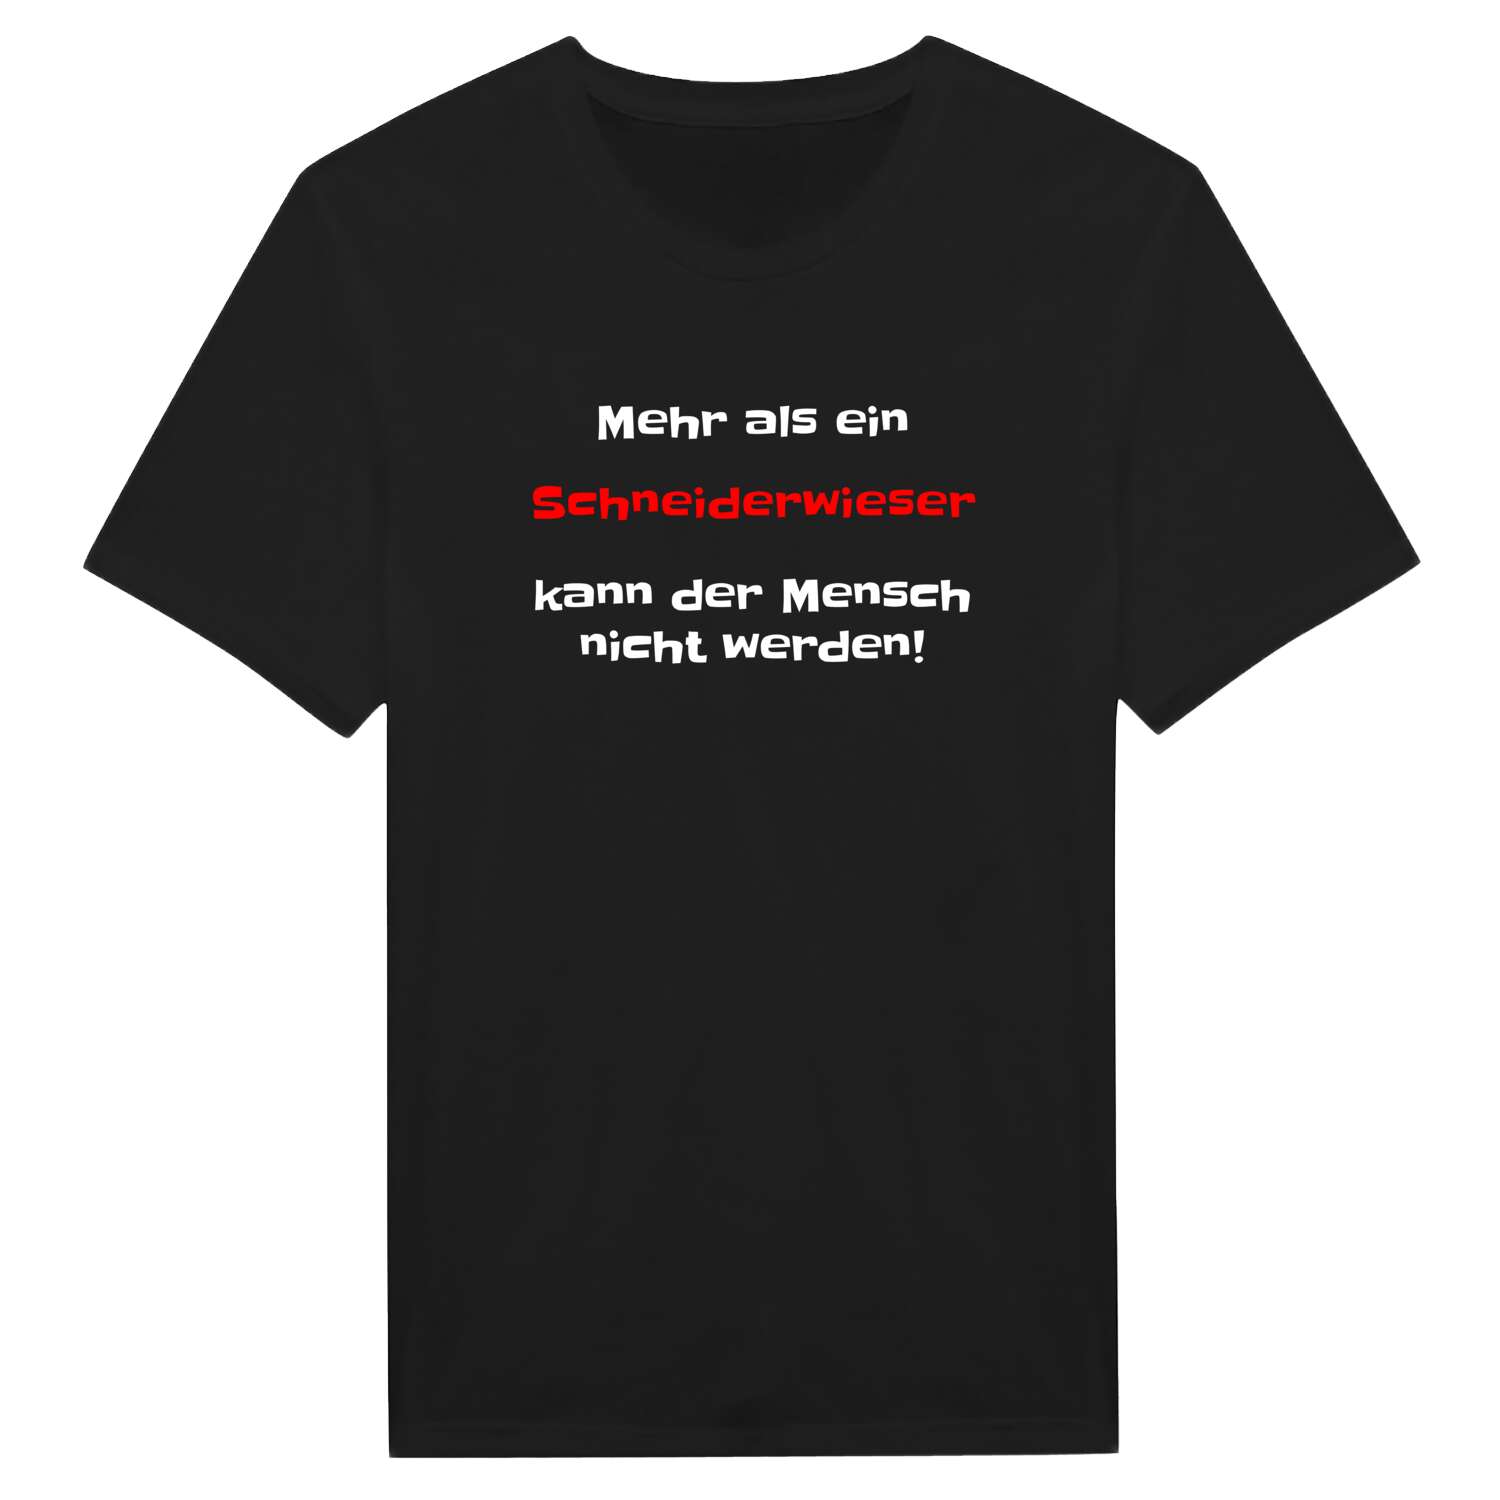 Schneiderwies T-Shirt »Mehr als ein«